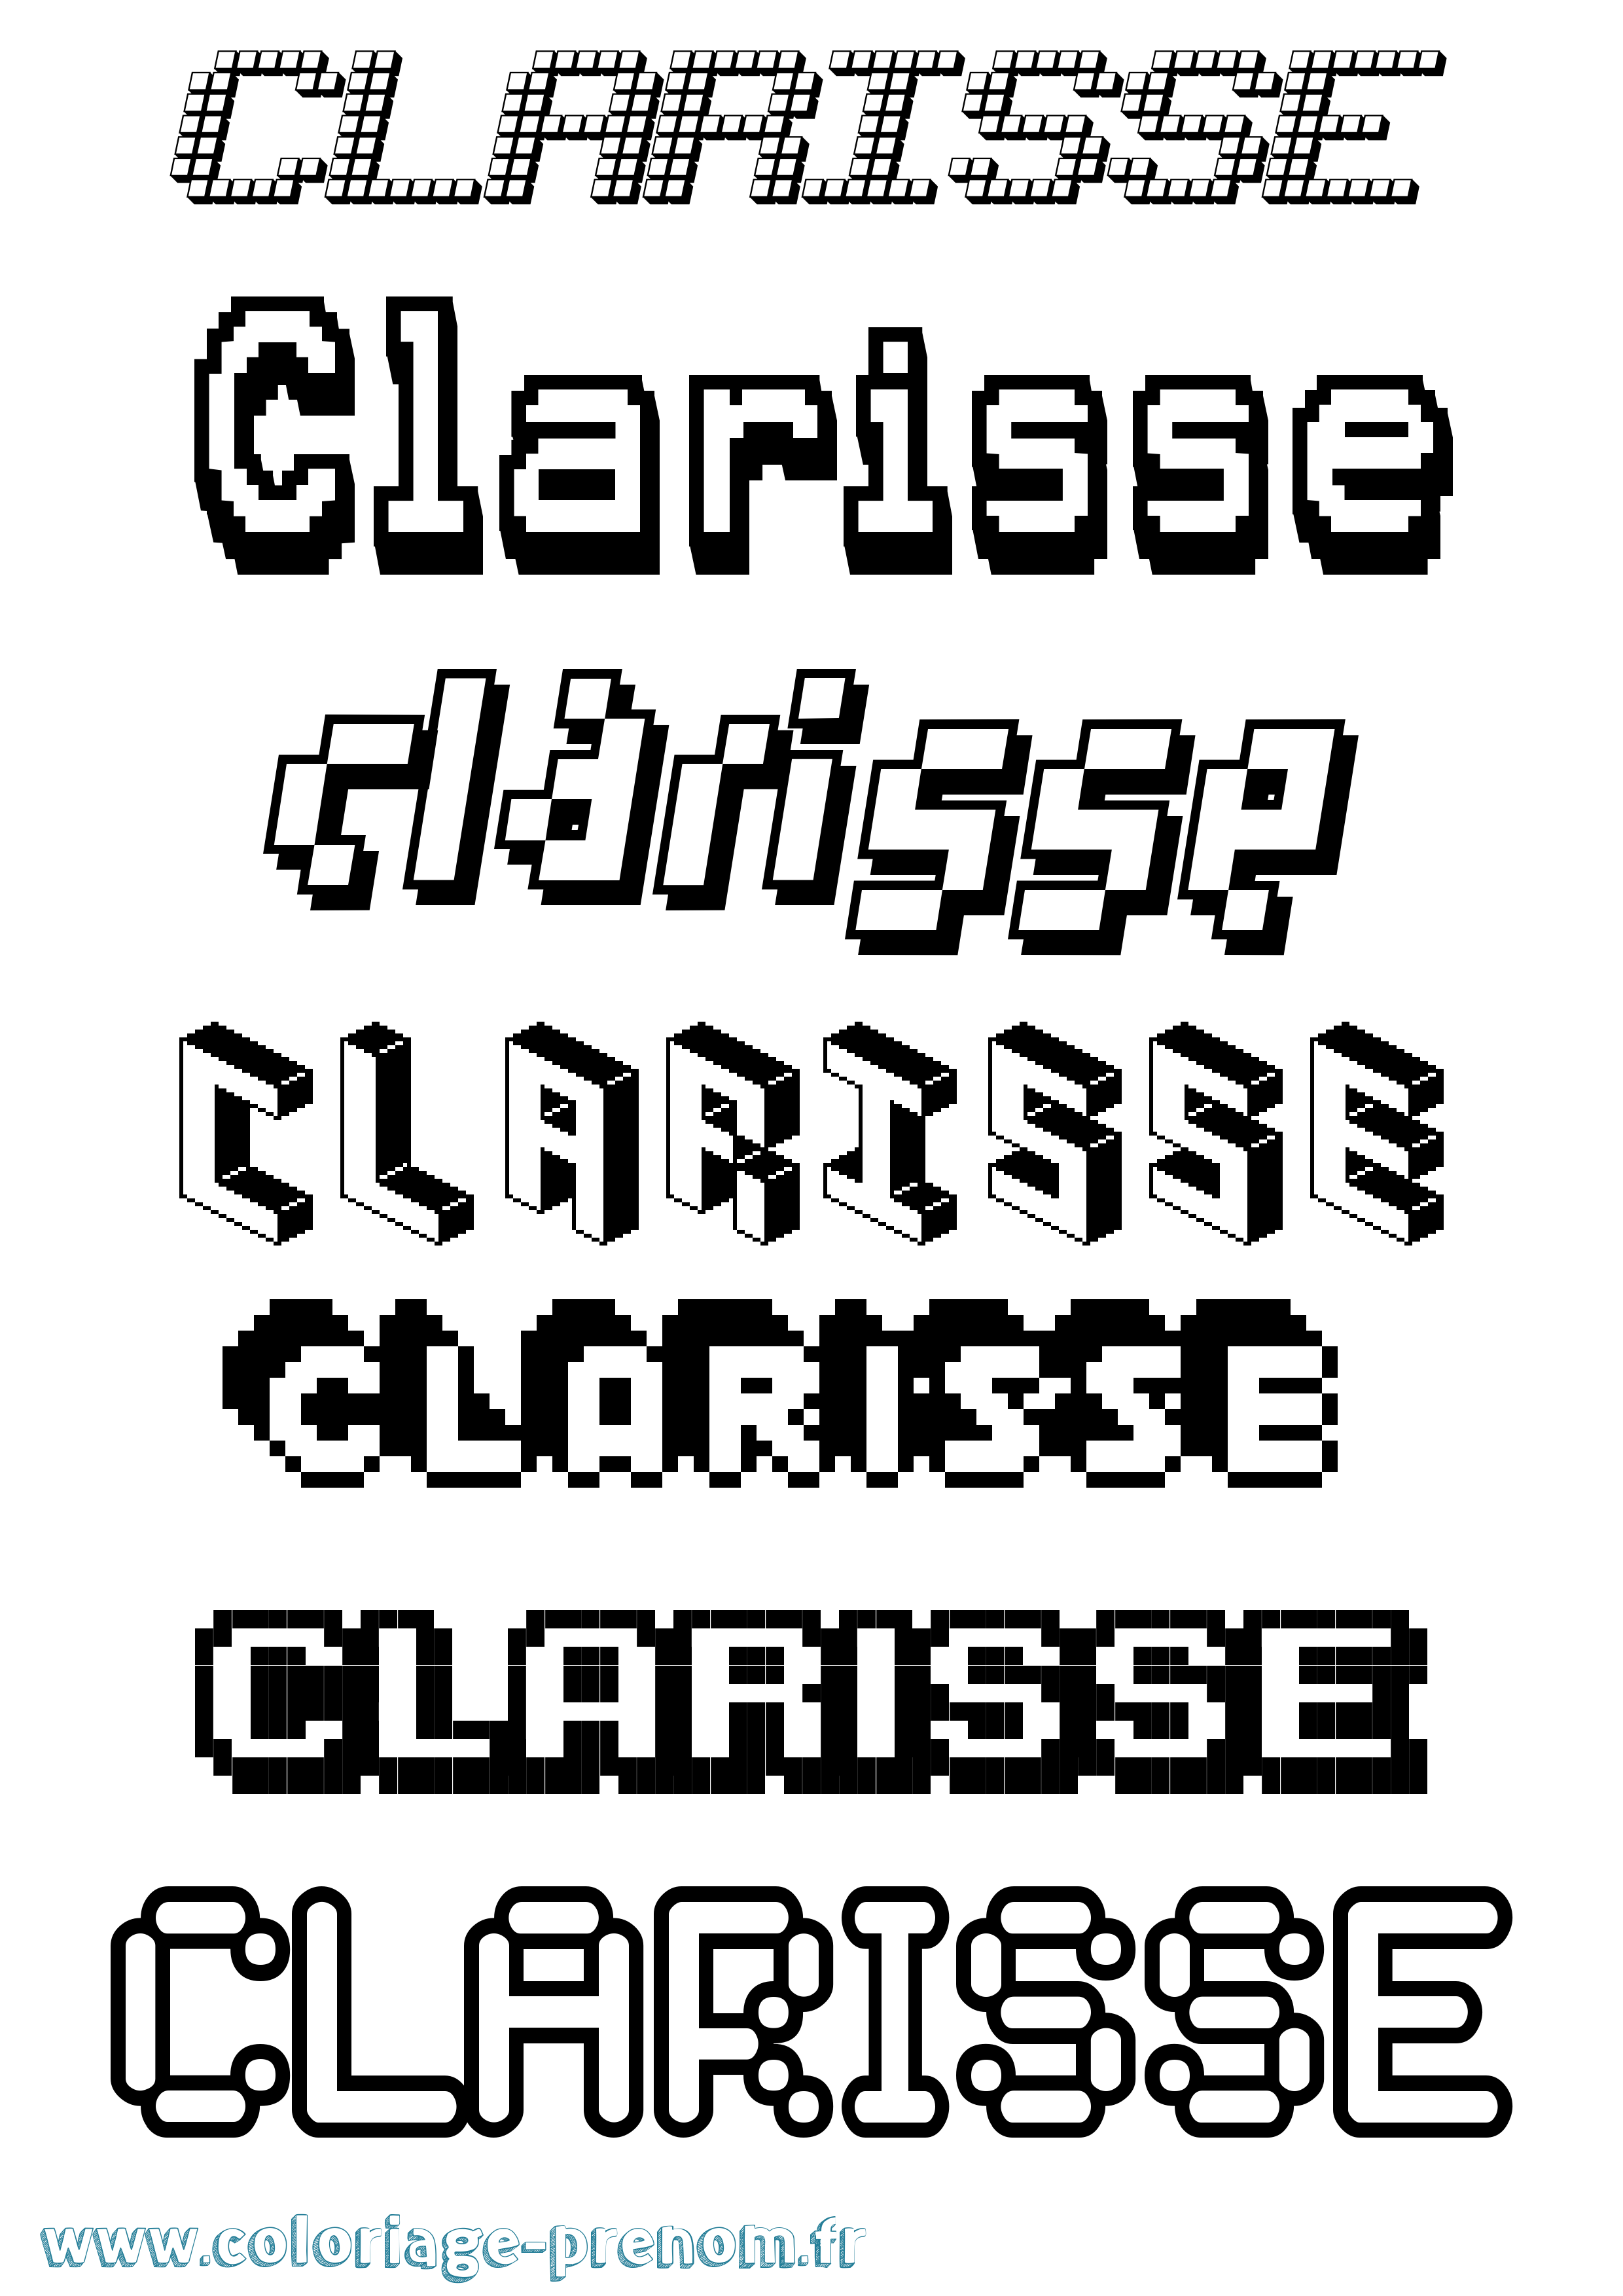 Coloriage prénom Clarisse Pixel